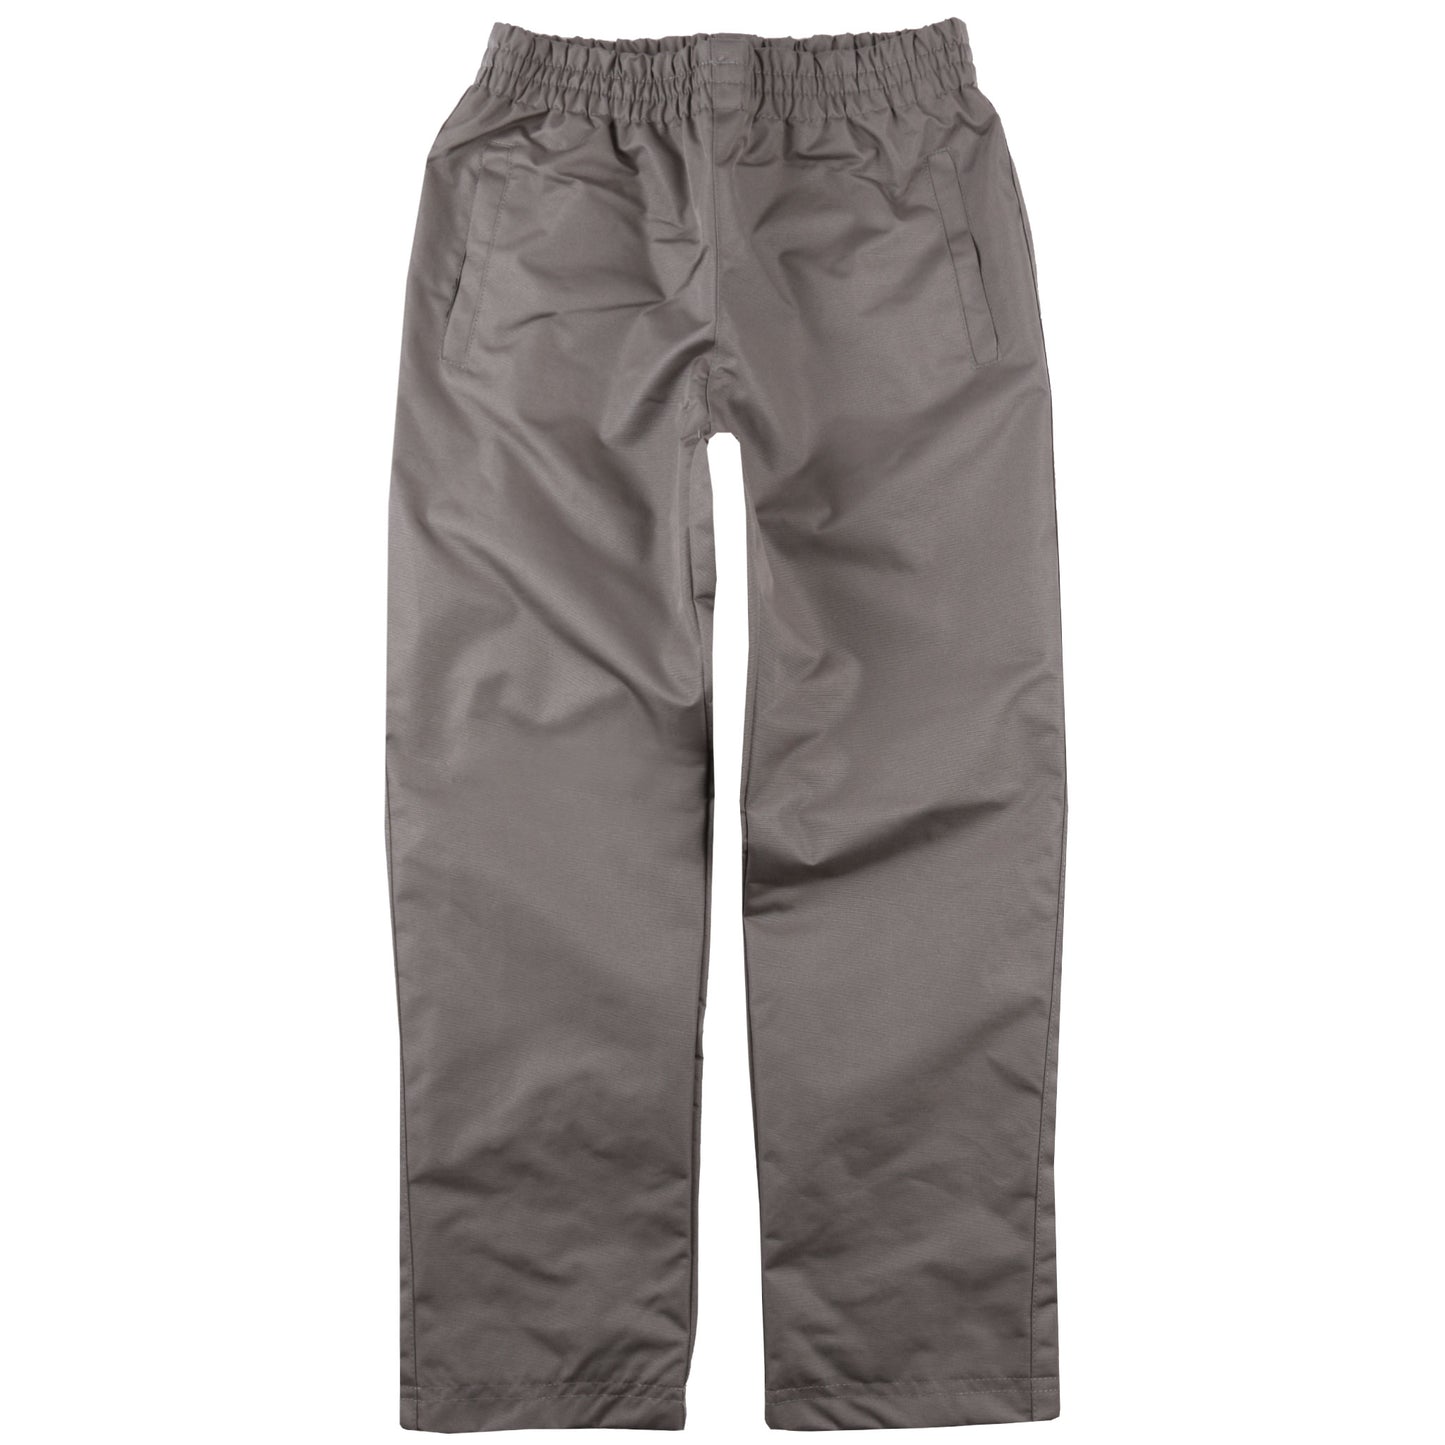 Pantalon anti-éclaboussures gris unisexe pour enfant